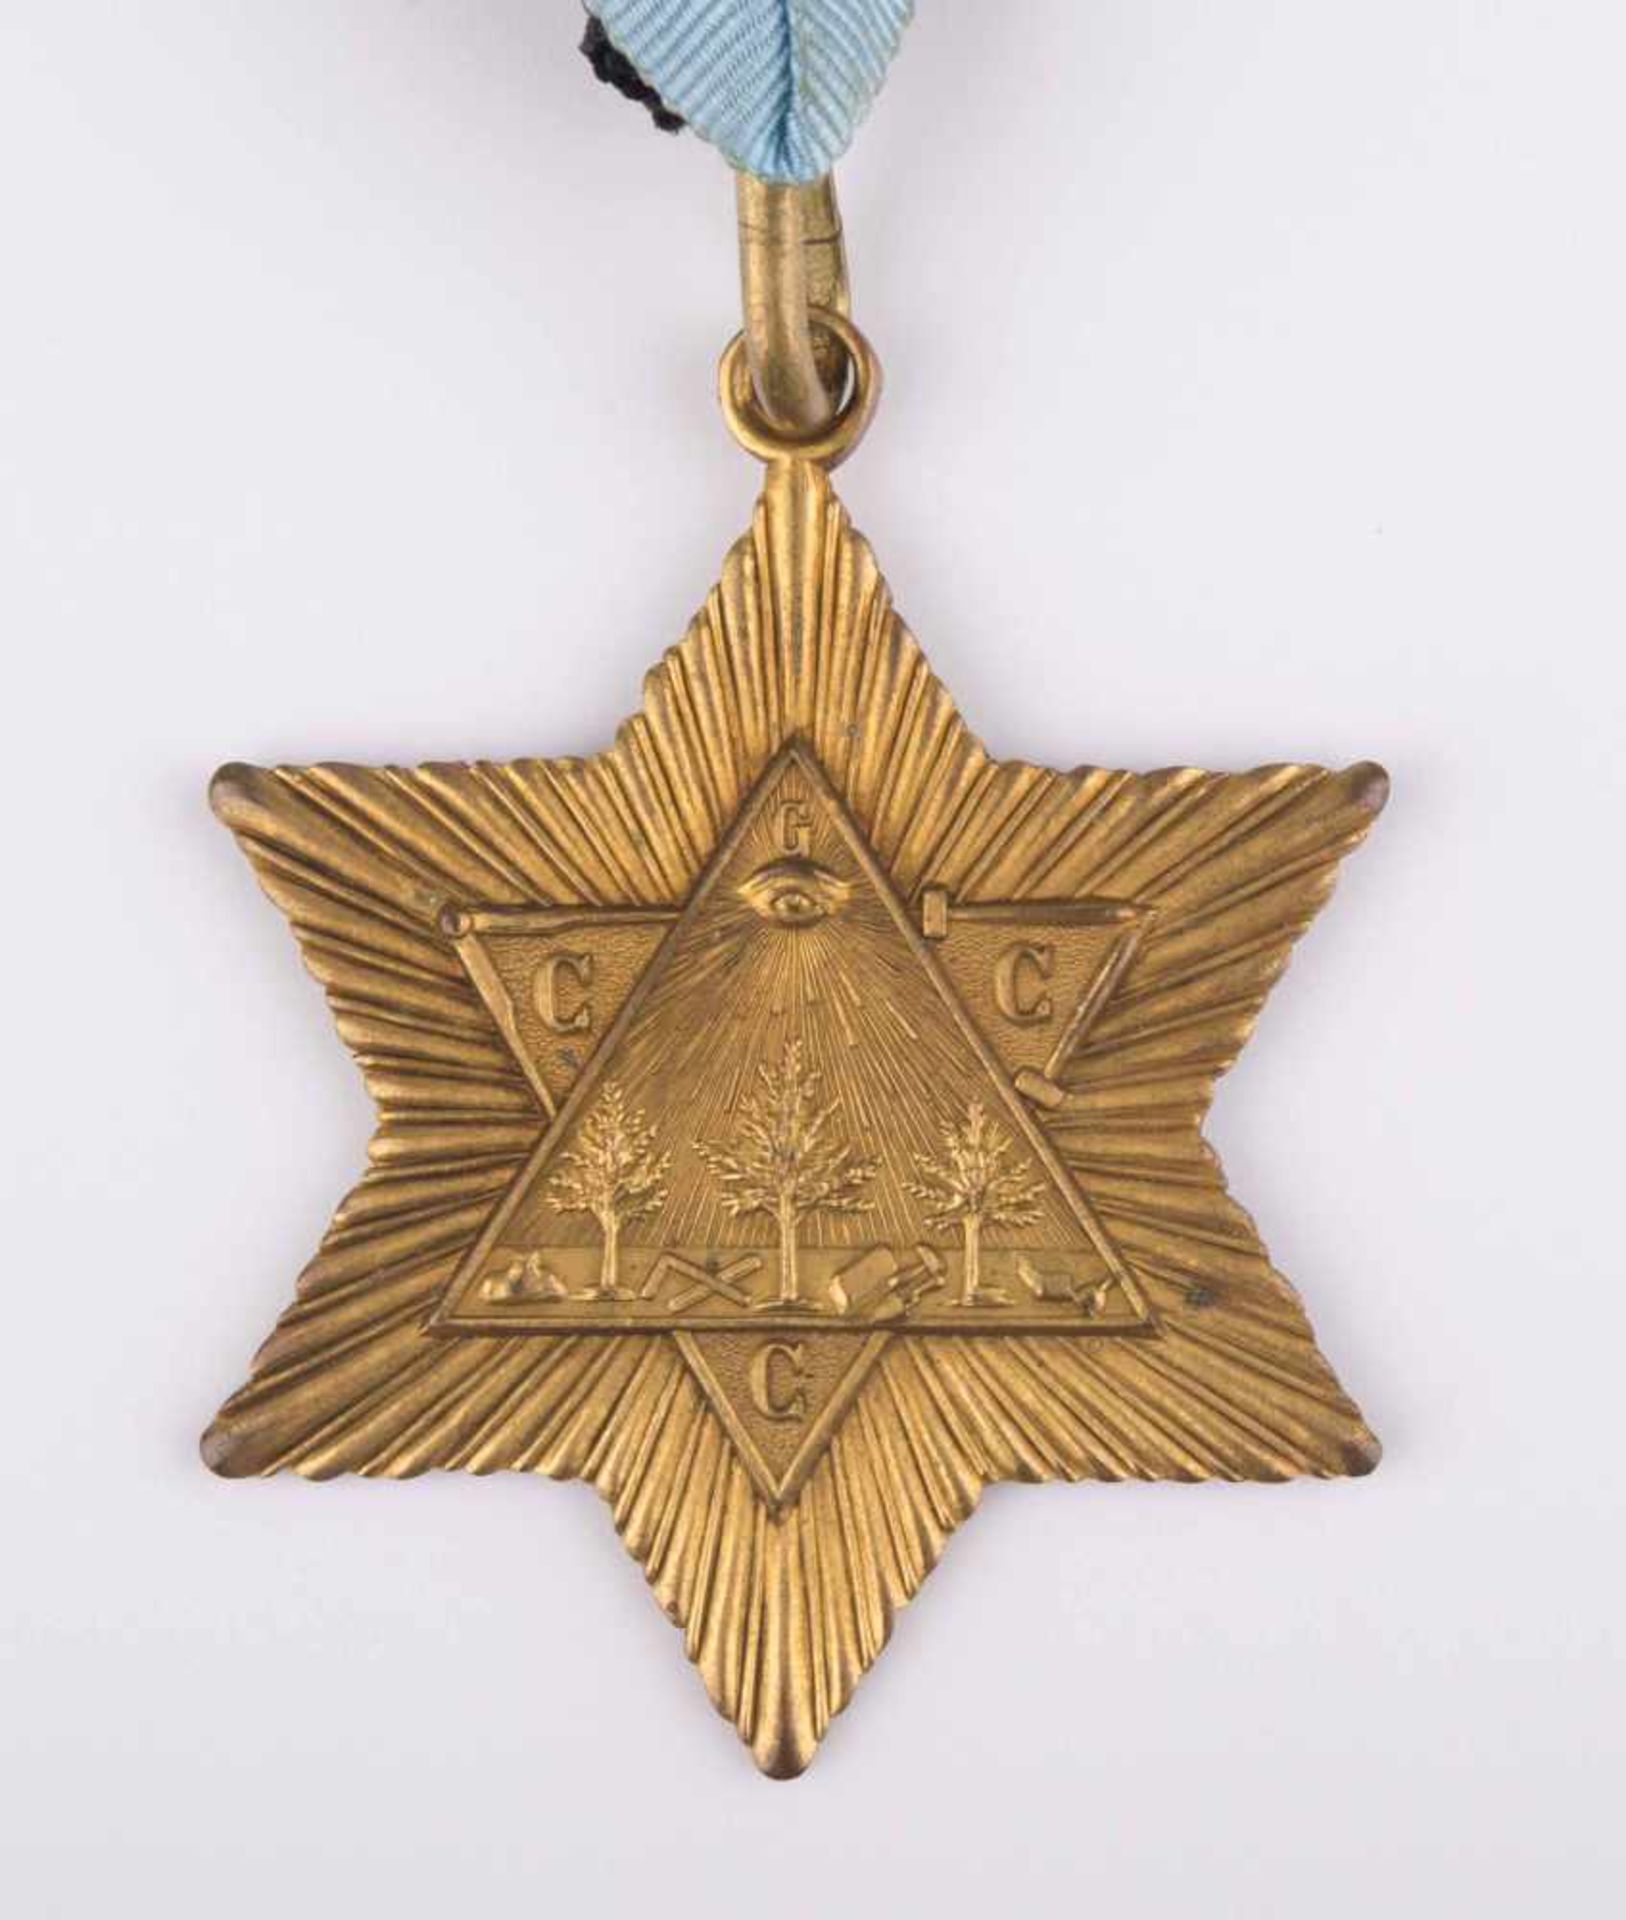 Freimaurer Orden/Anhänger / Freemason medal/pendant auf dem Orden das allsehende Auge, rückseitig - Bild 6 aus 8